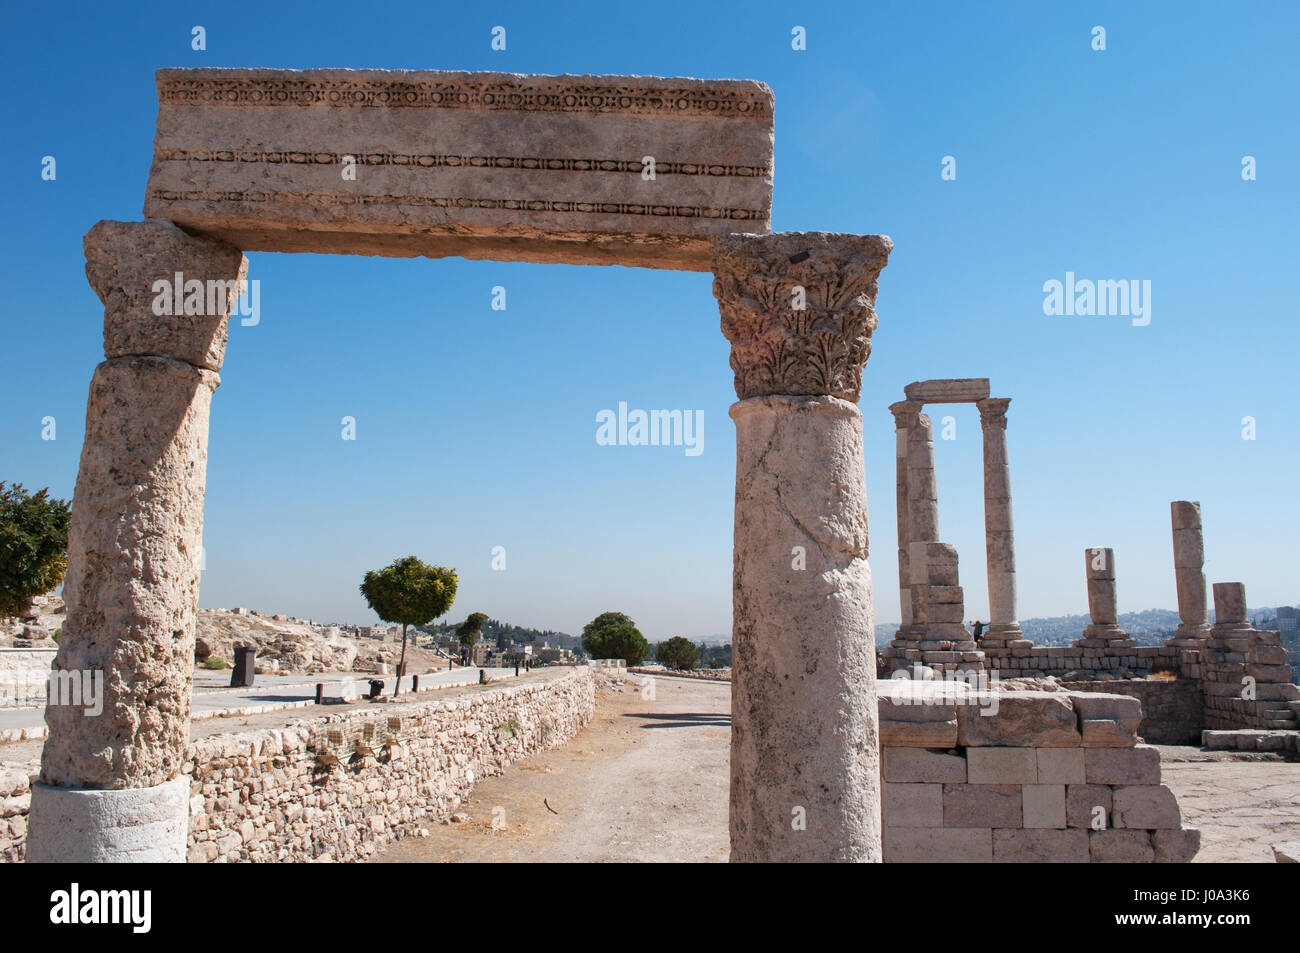 Les ruines du temple d'Hercule, la plus importante structure romaine dans la citadelle d'Amman, site archéologique, l'un des noyaux d'origine de la ville Banque D'Images